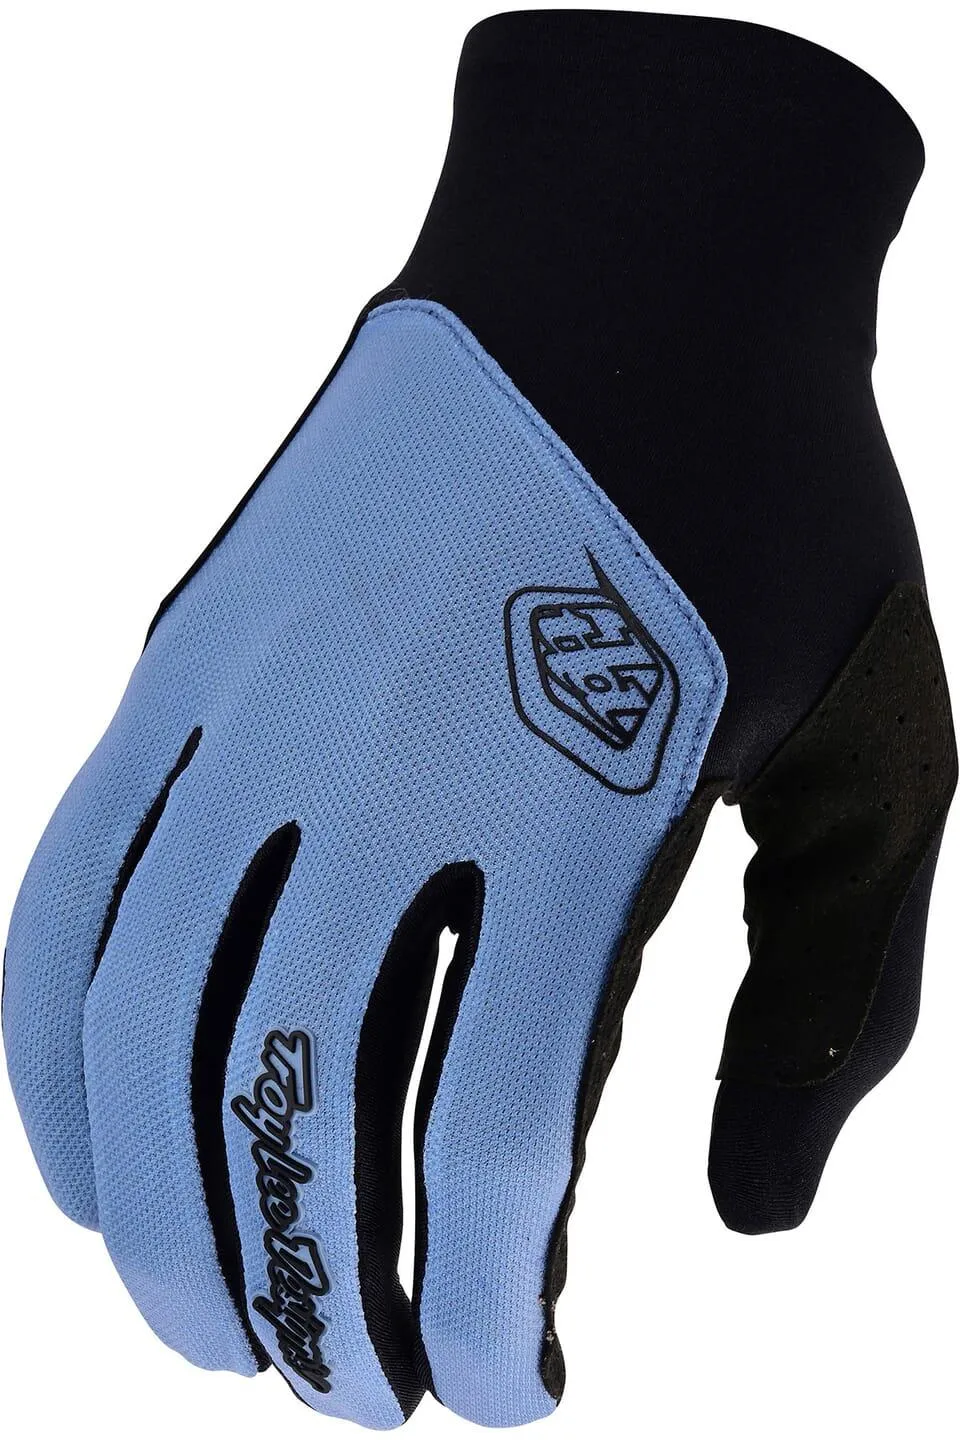  Flowline Gloves, Mono Blue